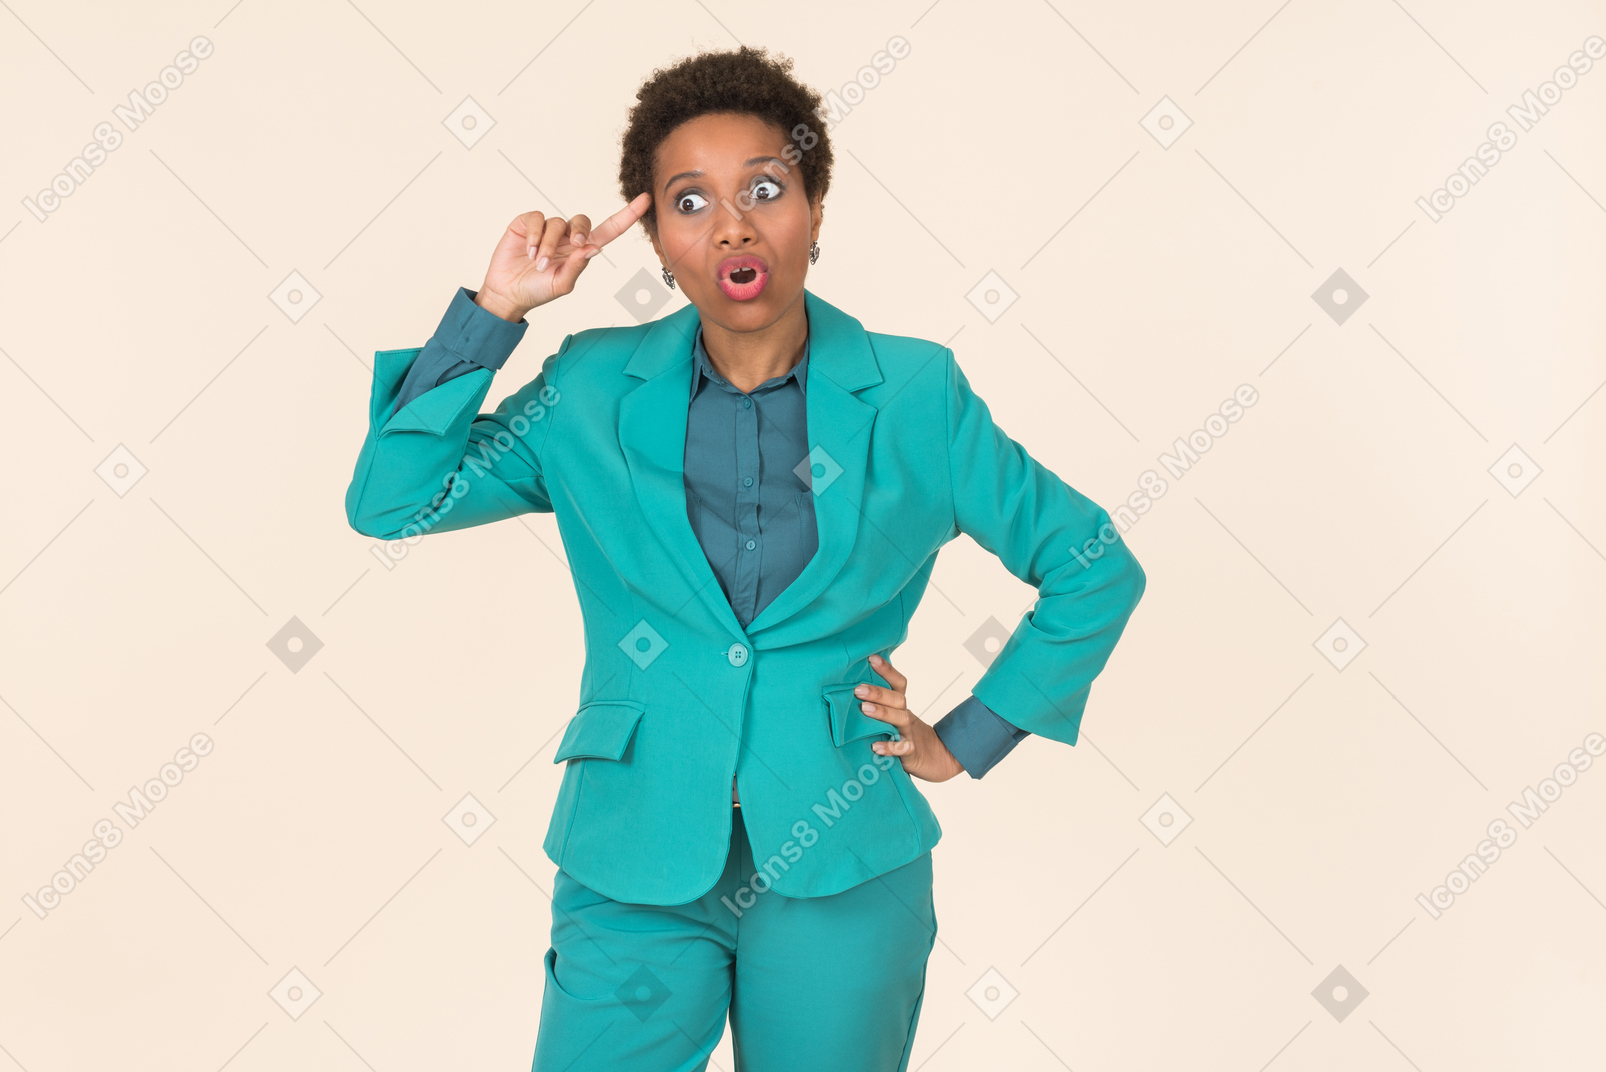 Donna di colore con un taglio di capelli corto, che indossa tutto blu, in piedi su un semplice sfondo pastello, con un aspetto emotivo